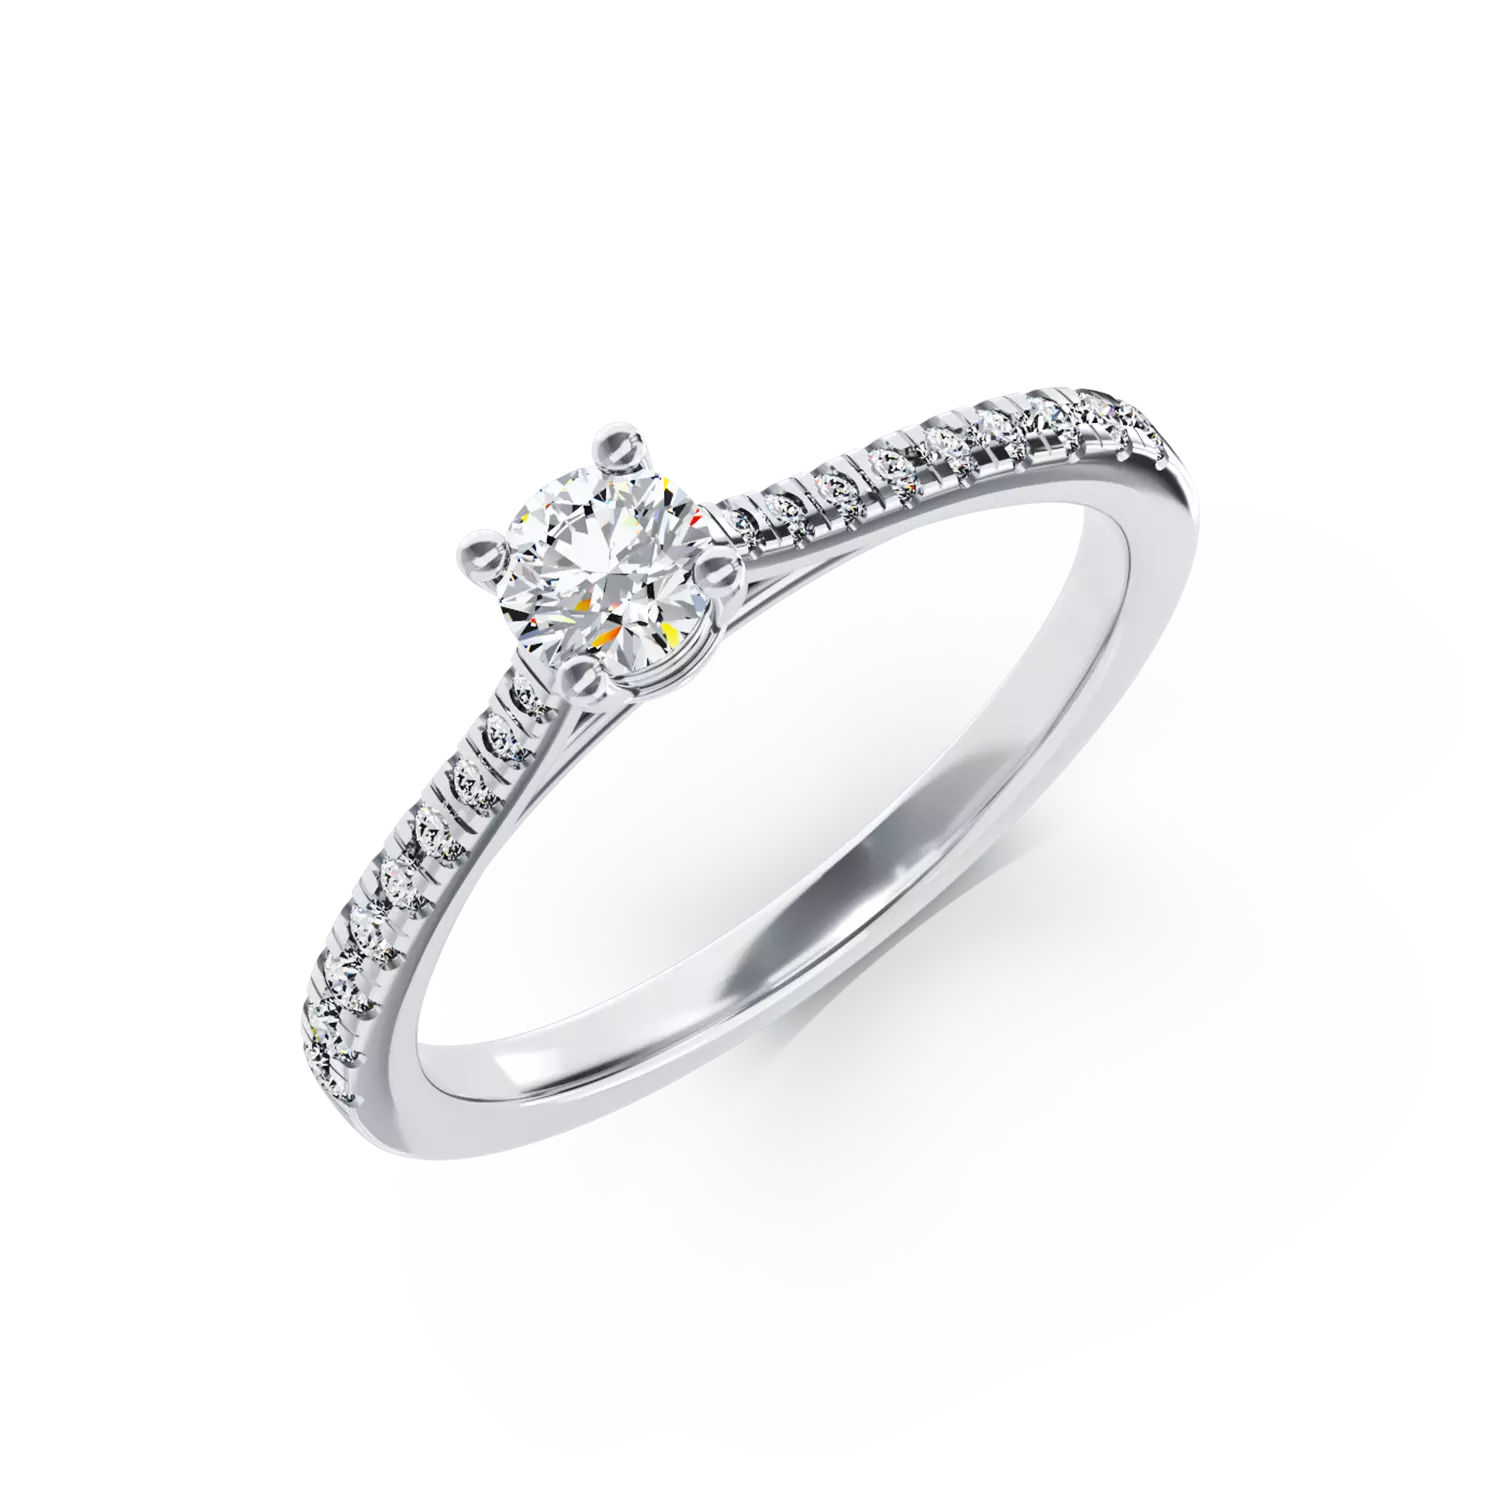 Eljegyzési gyűrű 18K-os fehér aranyból 0,24ct gyémánttal és 0,19ct gyémánttal. Gramm: 2,9